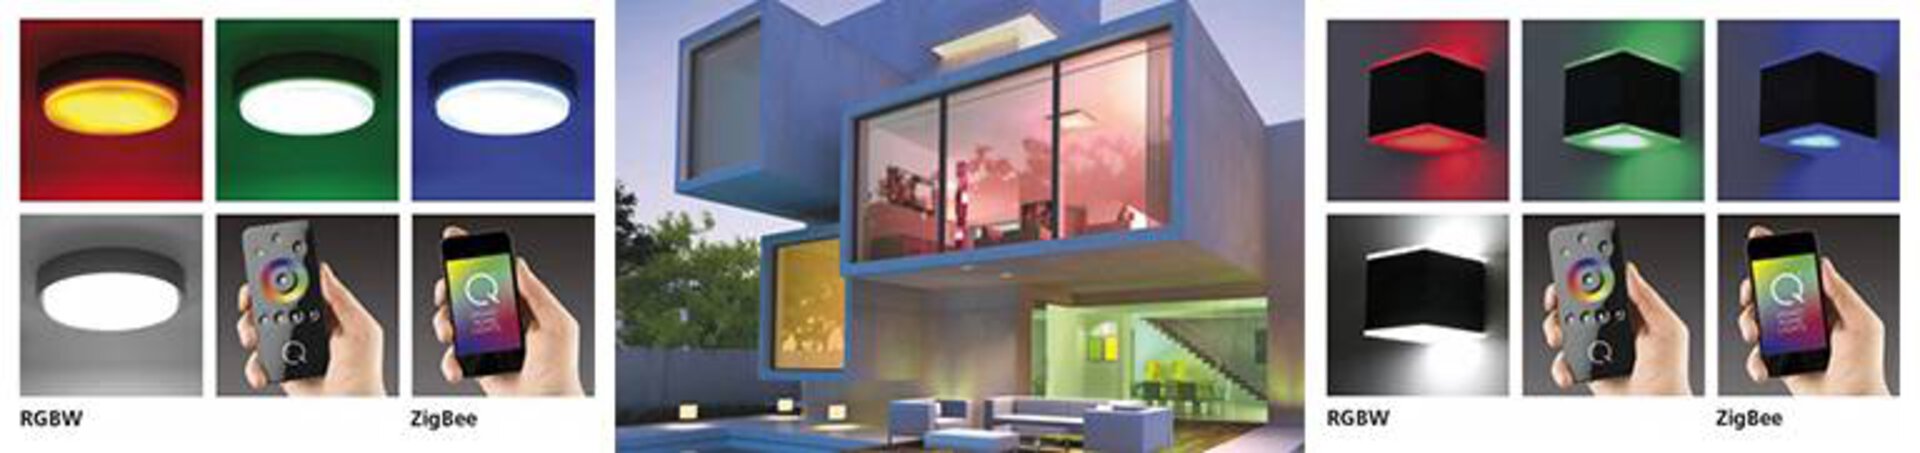 Bannerbild zur Steuerung der Smart-Home-Leuchten. Links und rechts sind Lampen in unterschiedlichen Farben zu sehen. In der Mitte ist ein geometrisches Haus von außen zu sehen, as dessen Fenster unterschiedlich farbige Lichter erstrahlen.